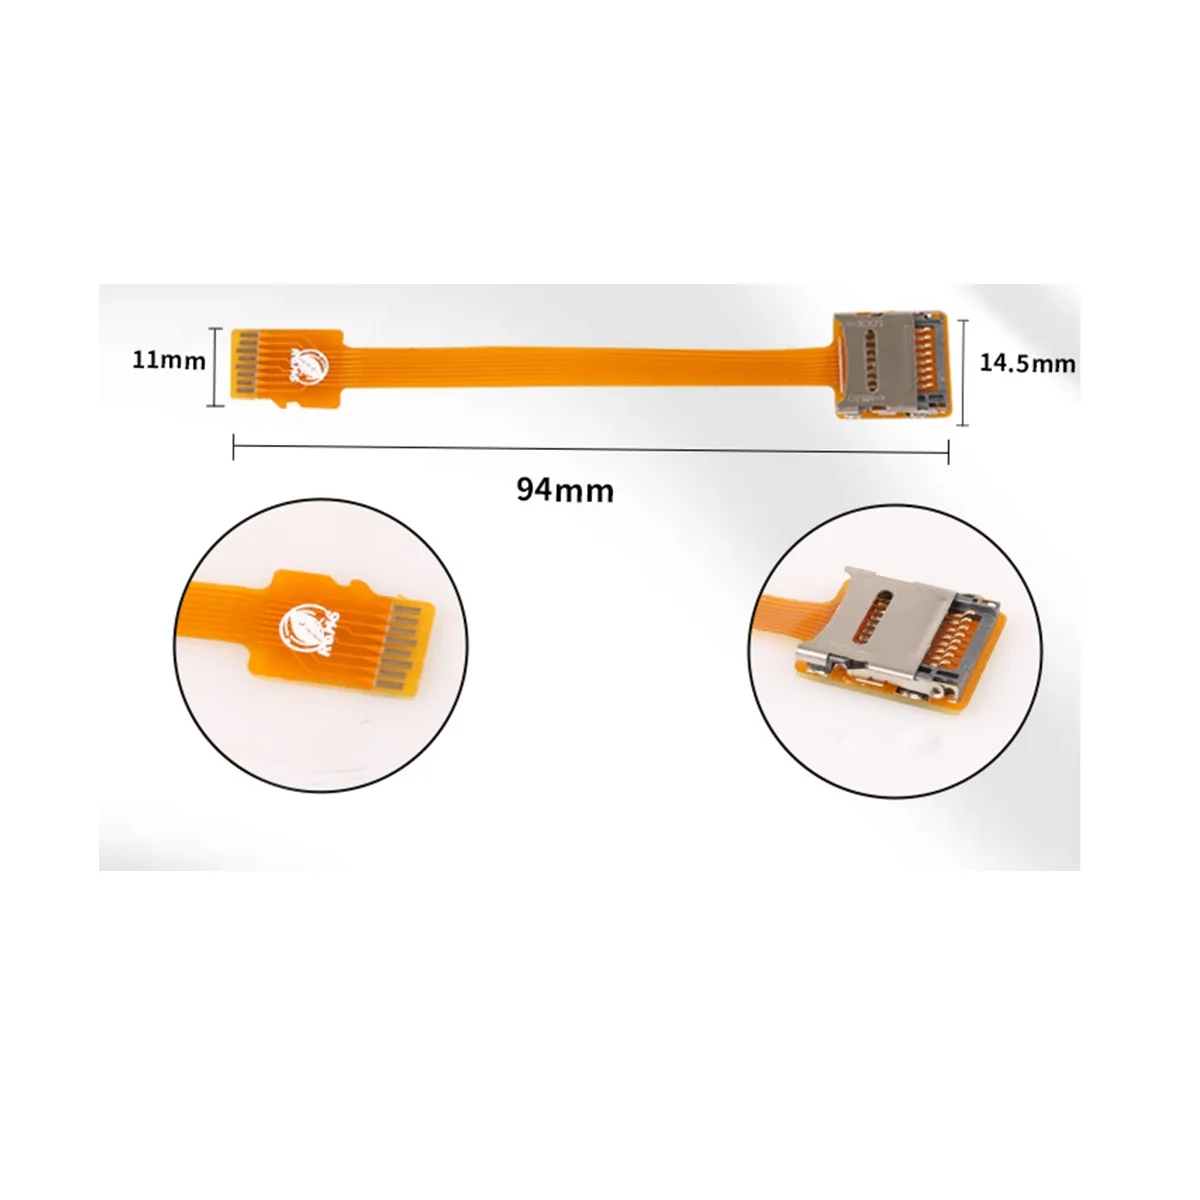 Комплект карт памяти Micro-SD/ TF Удлинитель от мужчины к женщине удлинитель кабеля FPC Soft Ribon Flat 10 см Изображение 1